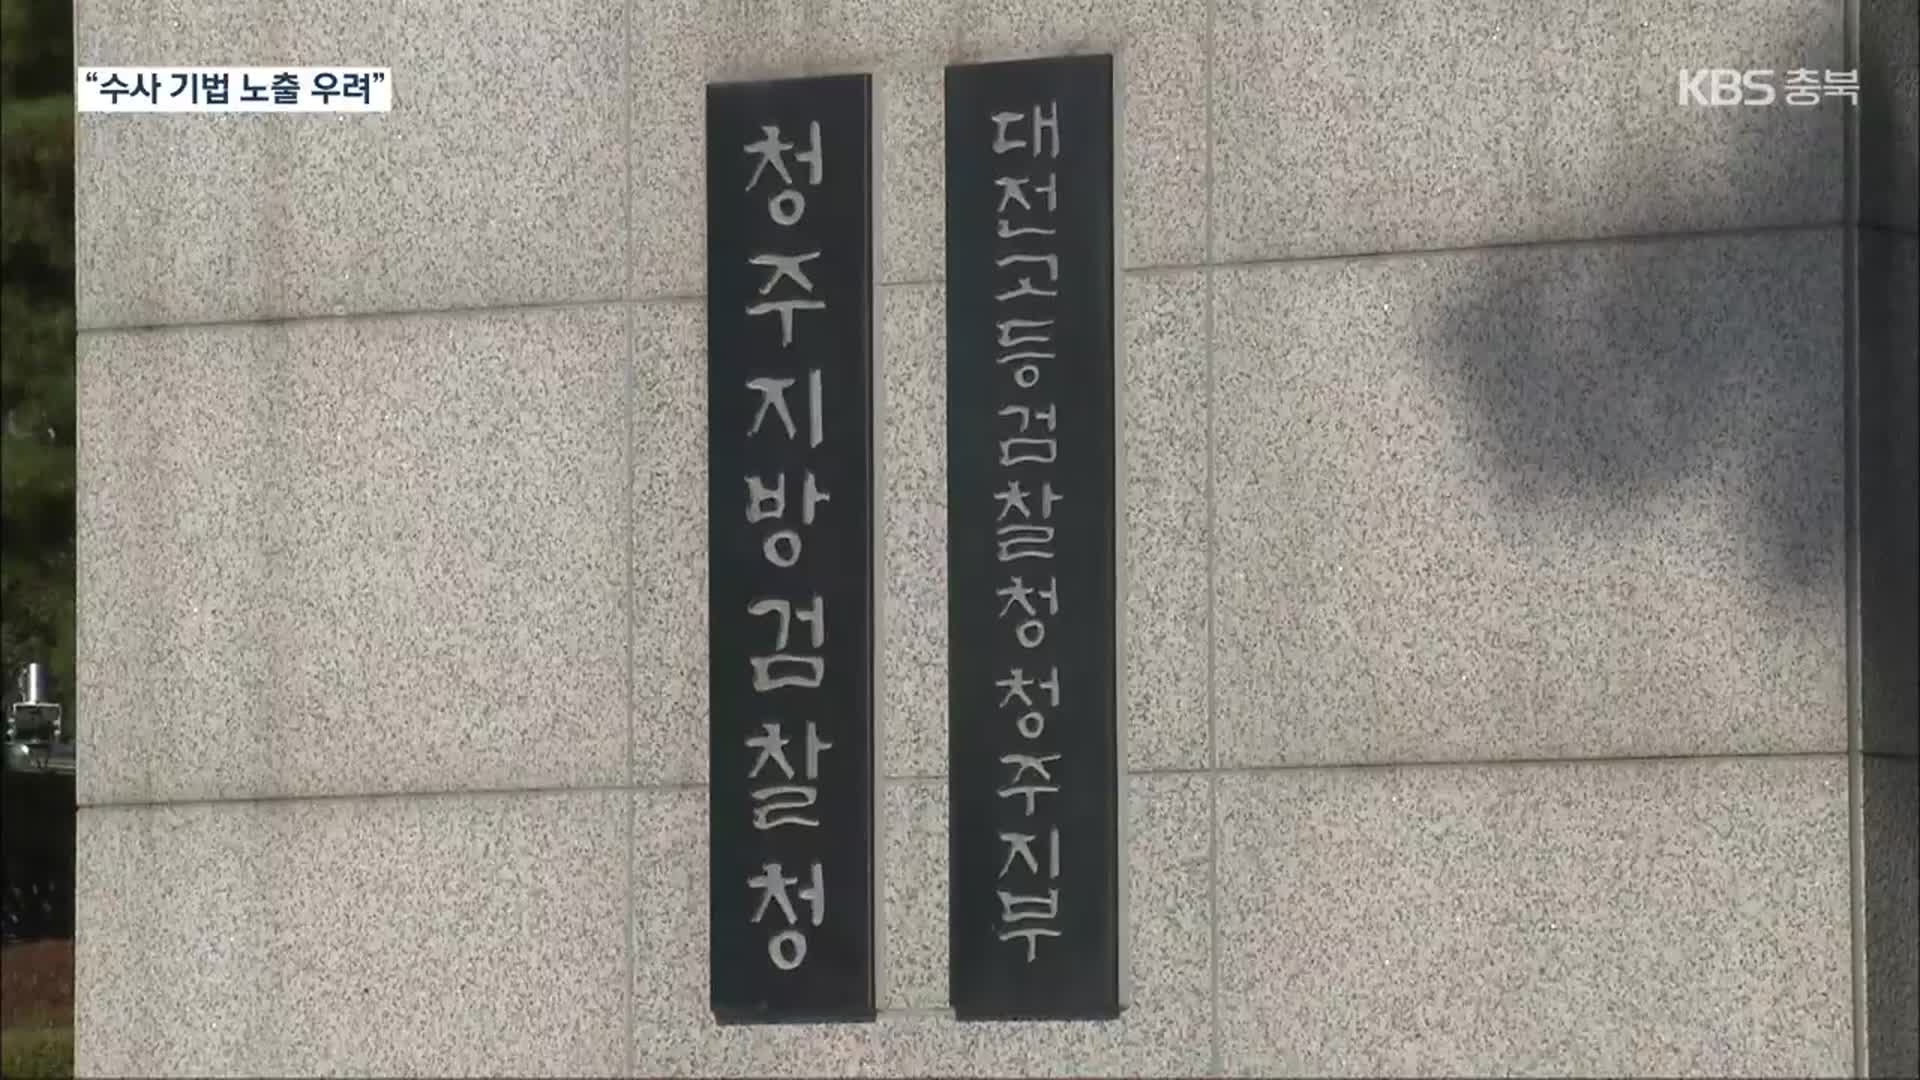 [단독] 법원, 청주 중학생 사건 수사 보고서 공개 결정…검찰 ‘항소’